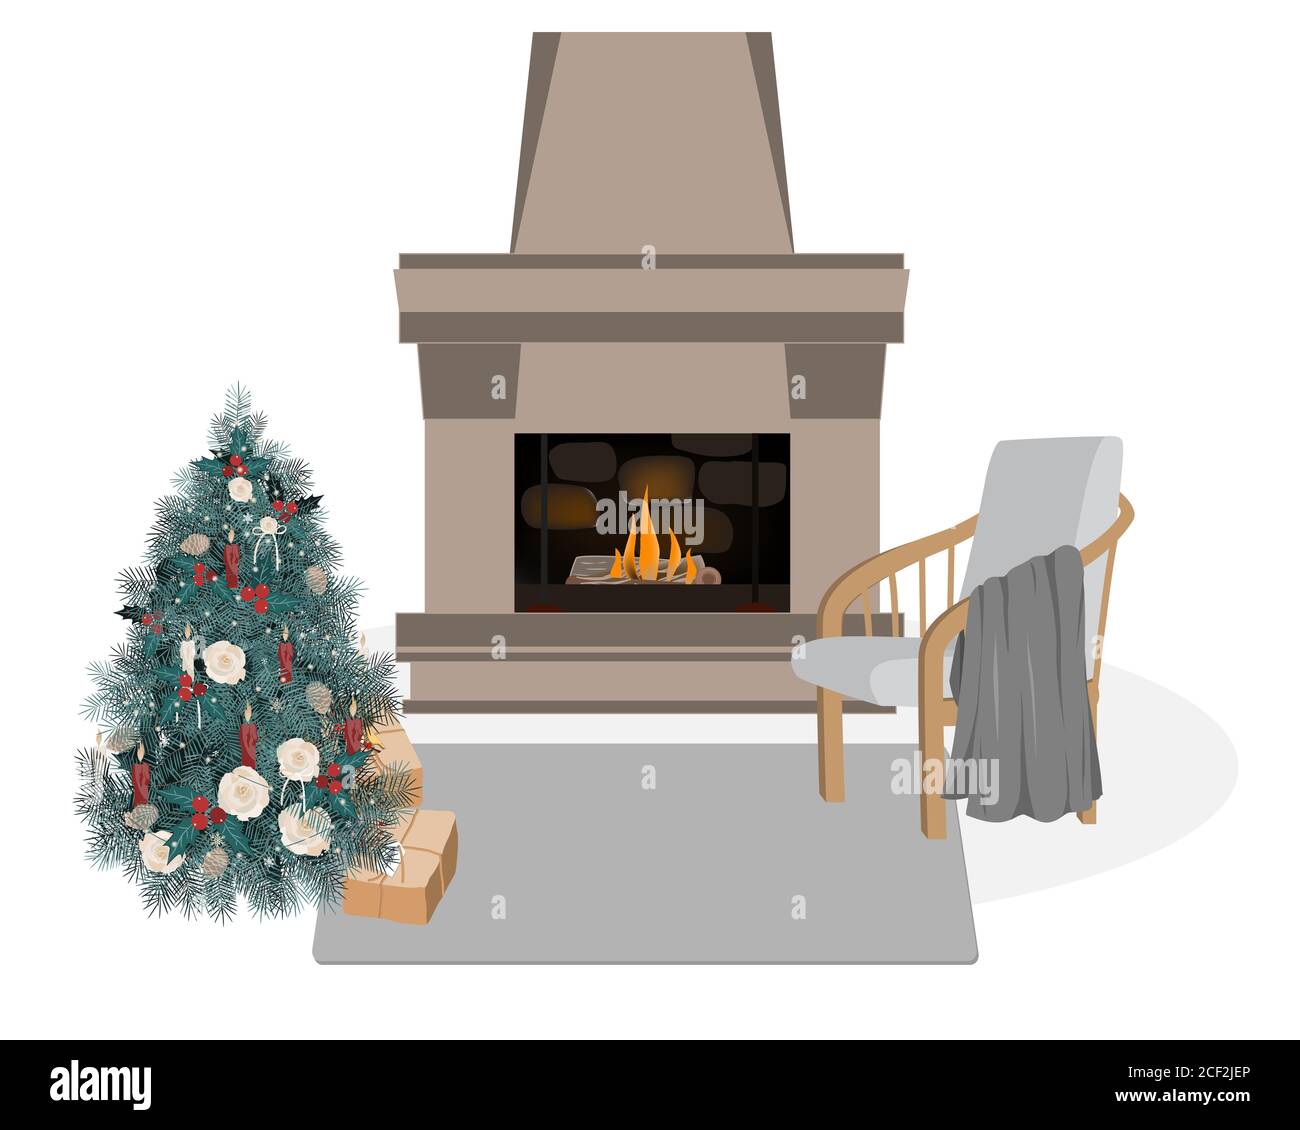 Interni scandinavi graziosi e accoglienti, illustrazione vettoriale dell'igge invernale. Camino, albero di Natale decorato, sedia, e coperta. Cartoni animati piatti Illustrazione Vettoriale